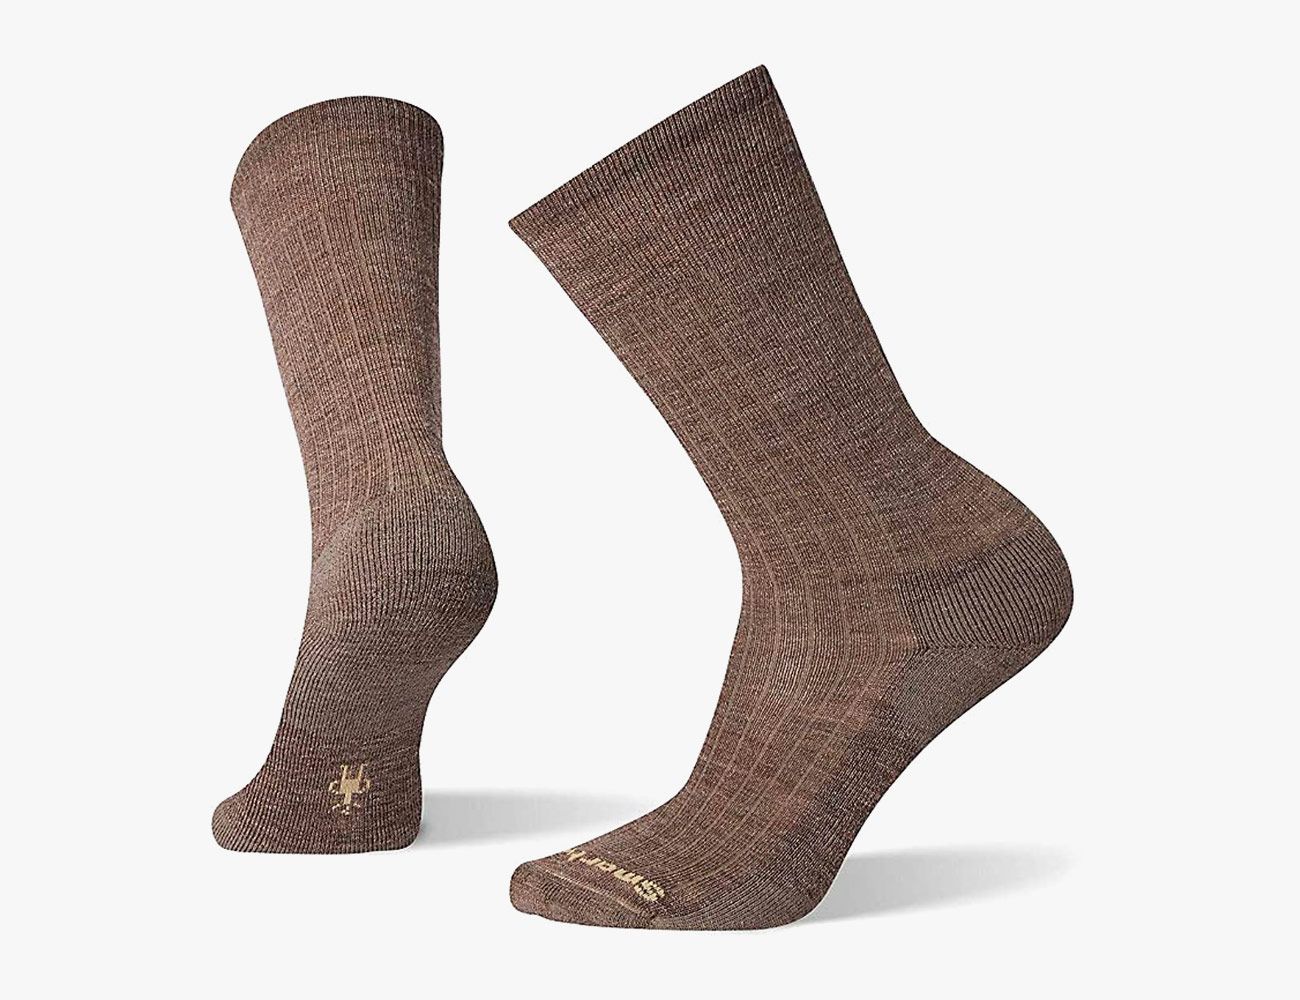 NWT Men's Wool Works 68% Merino Wool Socks 4 Pair Size 10-13 Grey/Navy #1012A 